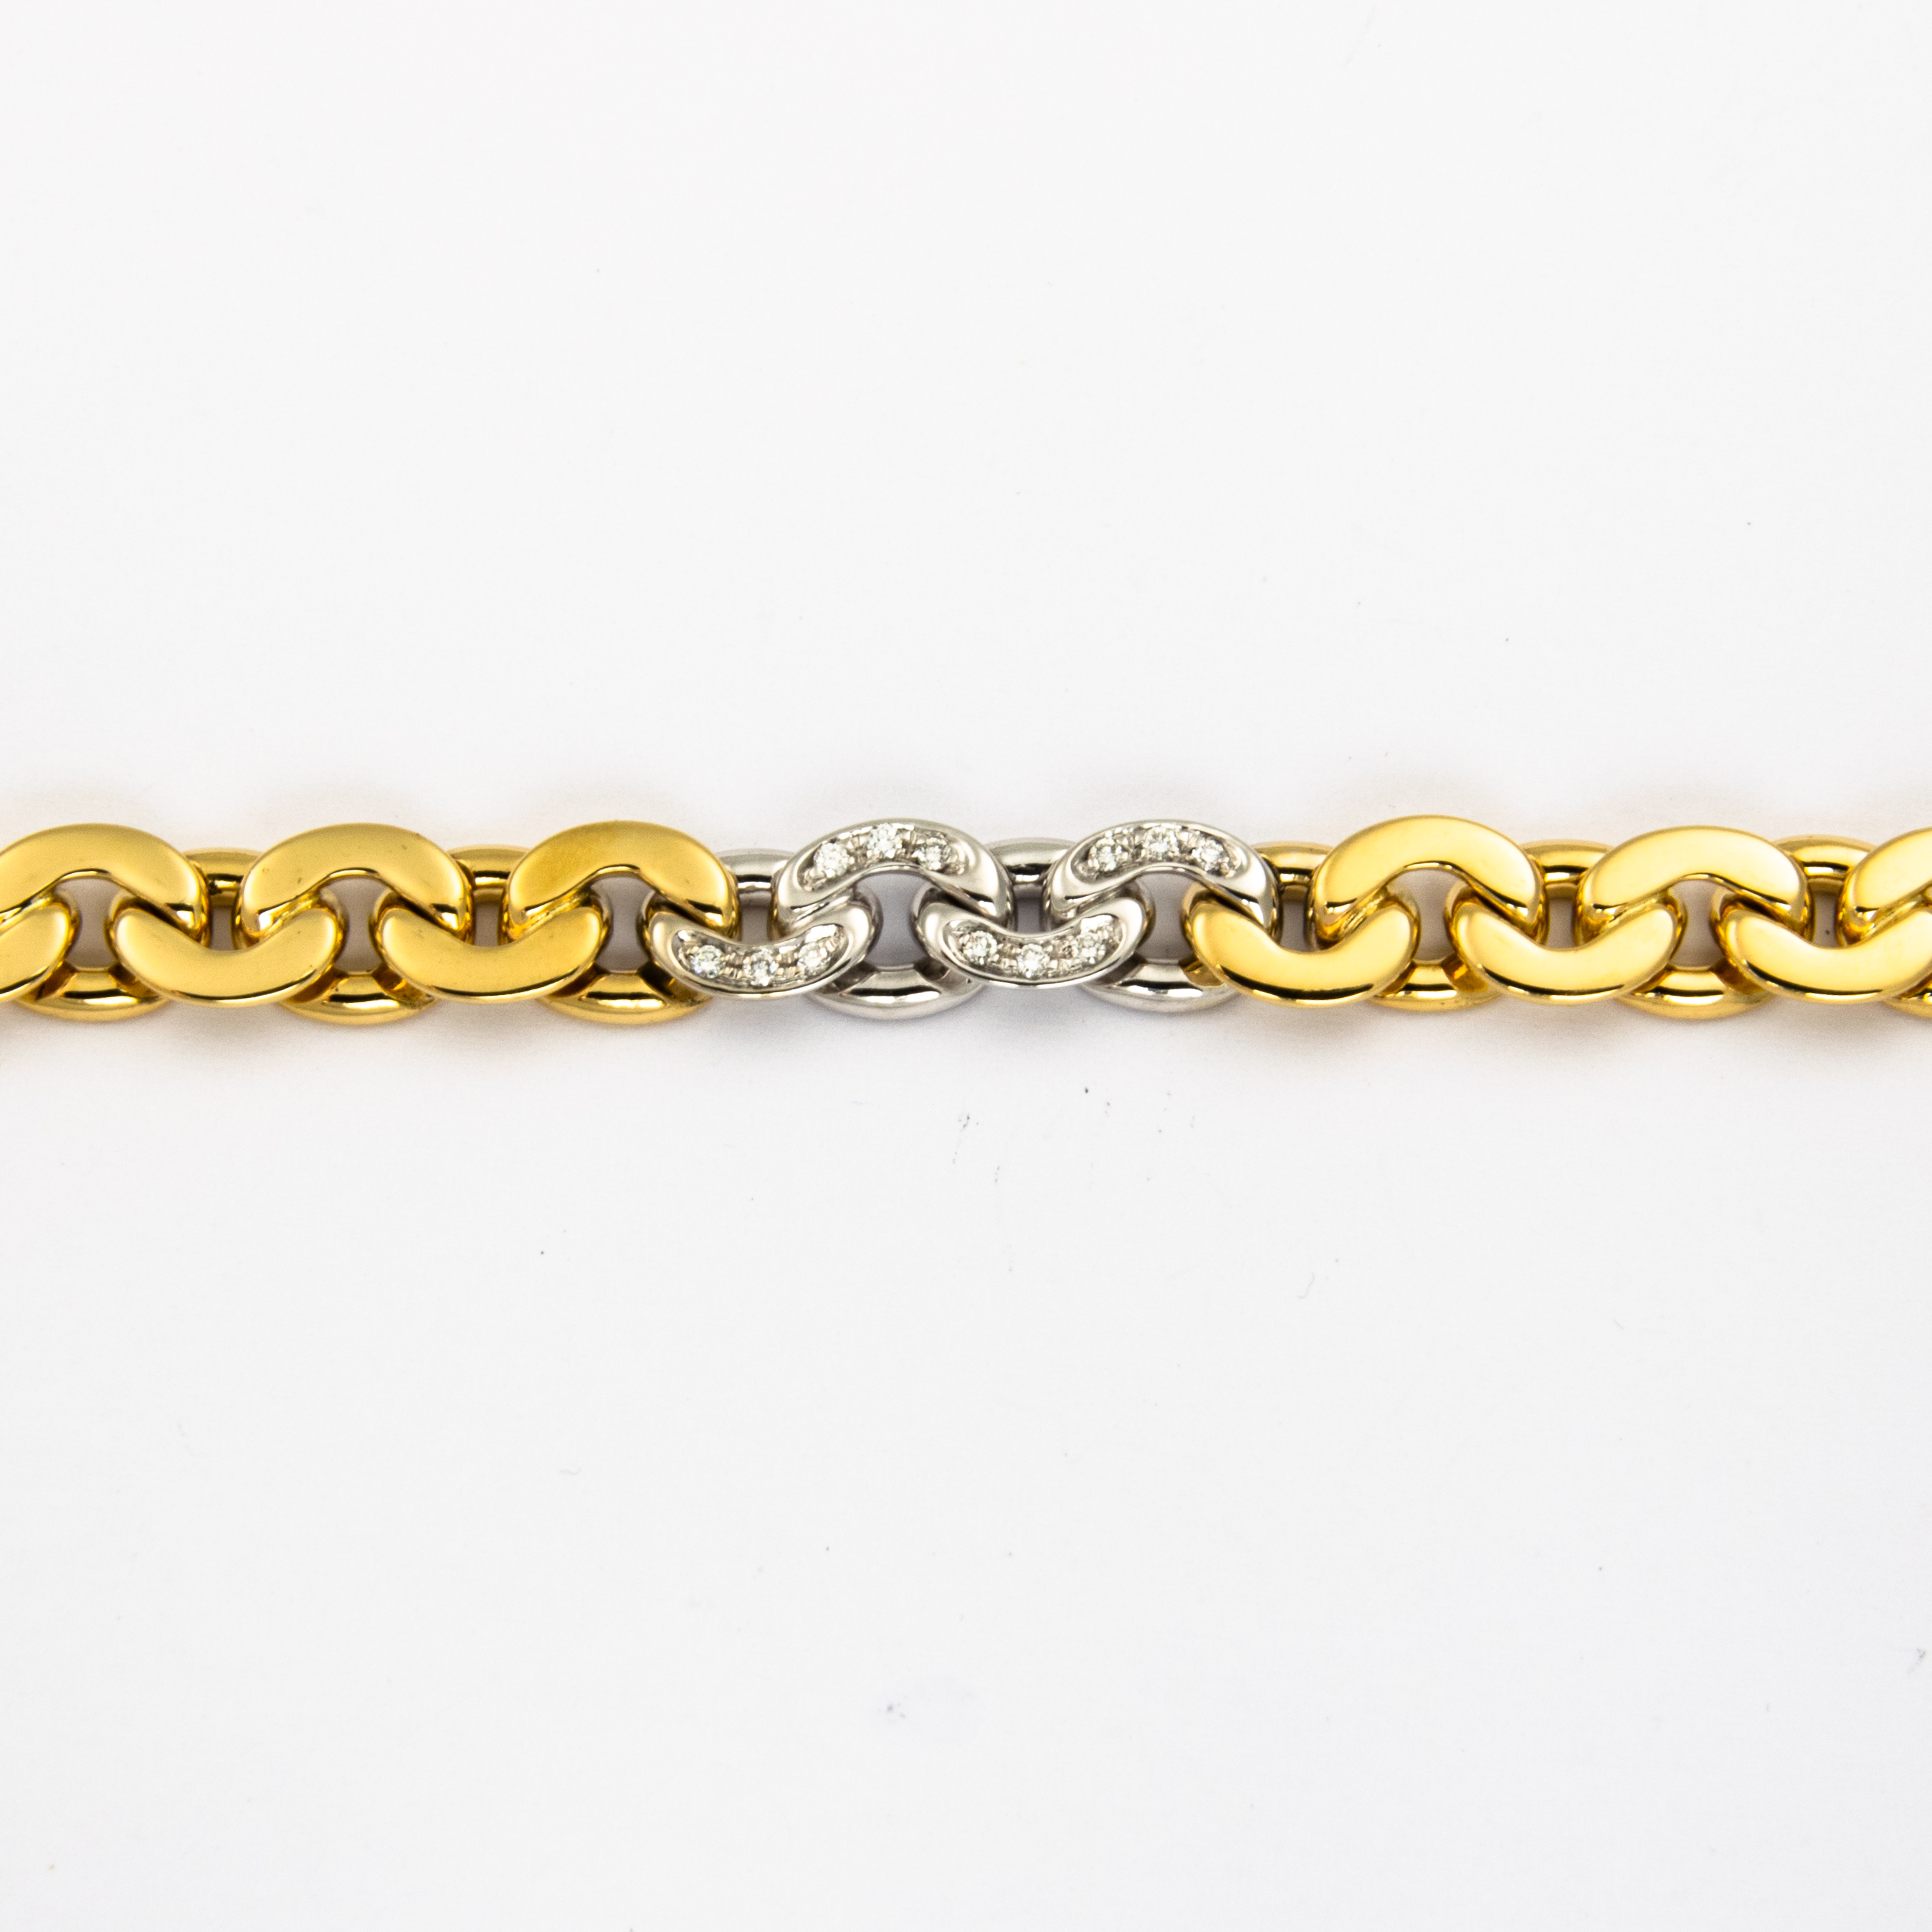 Brillantgliederarmband aus 750 Gelb- und Weißgold, nachhaltiger second hand Schmuck perfekt aufgearbeitet